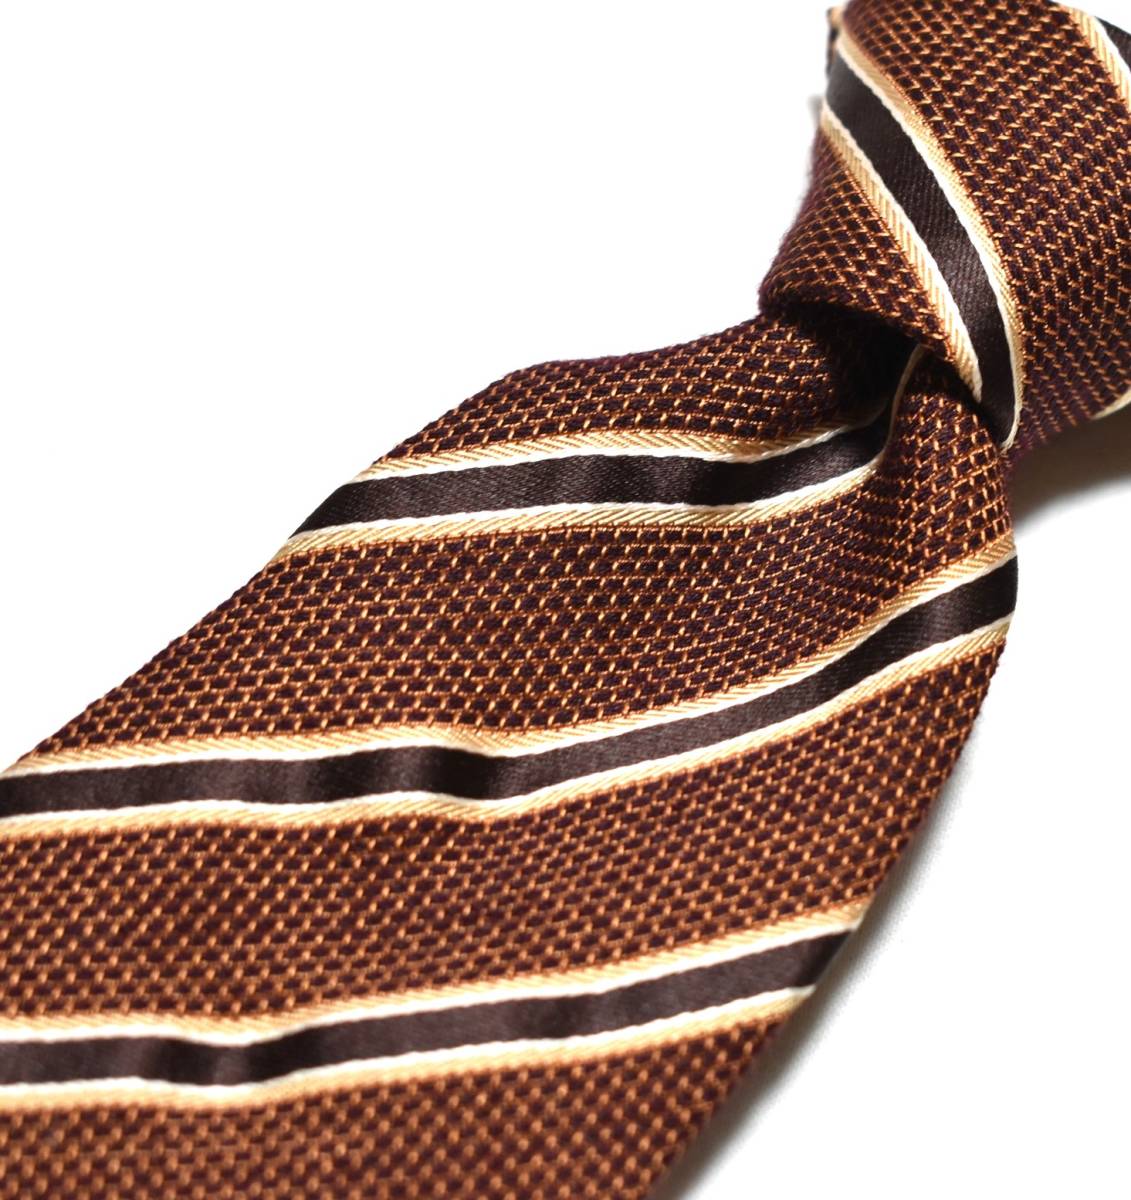 W061*DAKS necktie stripe pattern *